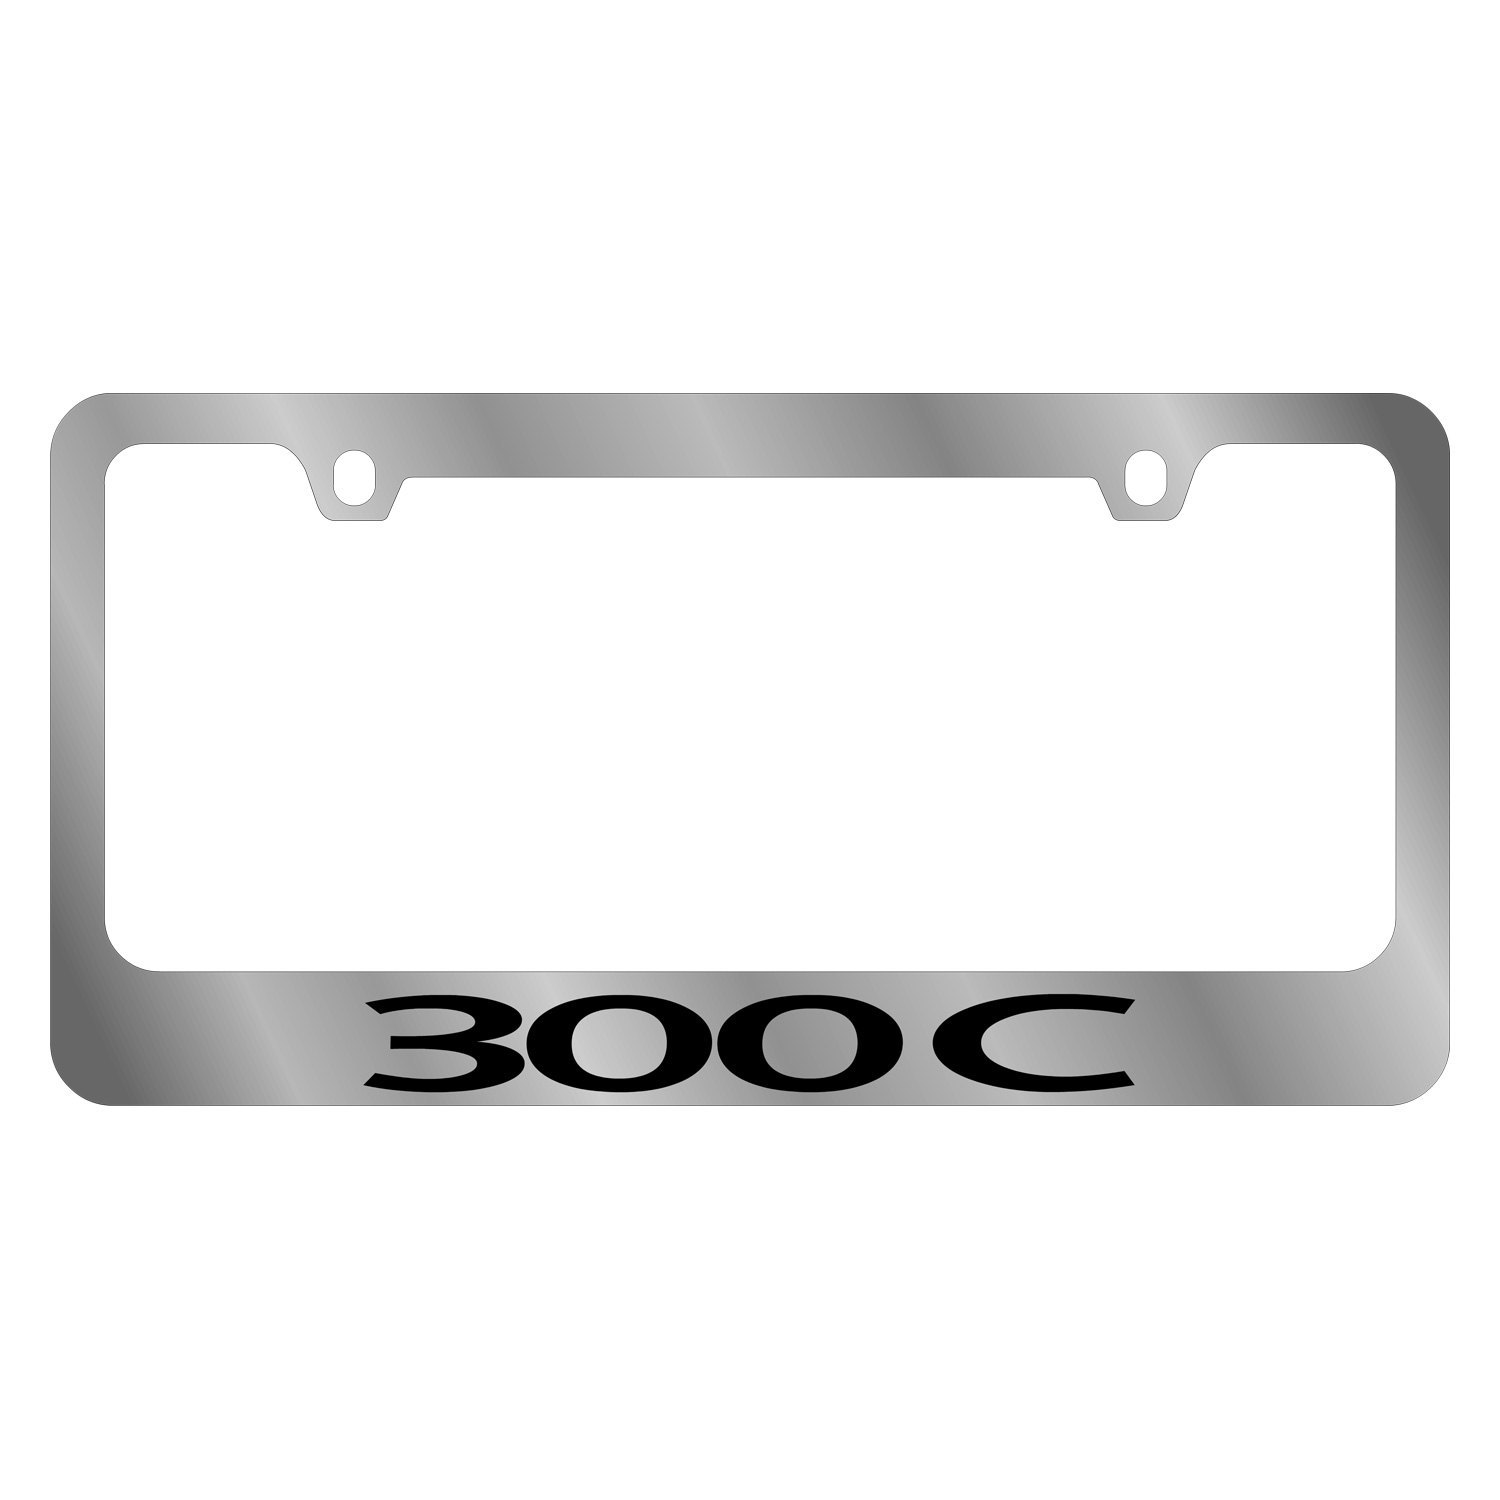 Chrysler license plate frames #2